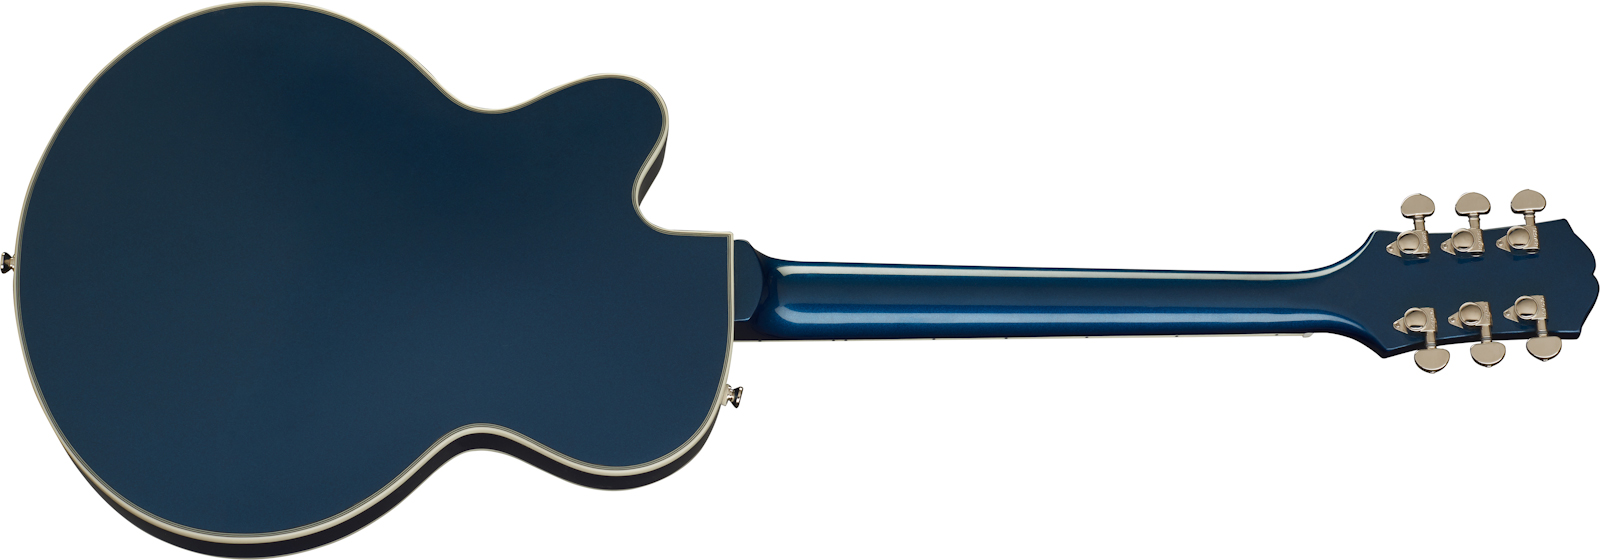 Epiphone Uptown Kat Es Original 2h Ht Eb - Sapphire Blue Metallic - Guitare Électrique 1/2 Caisse - Variation 1